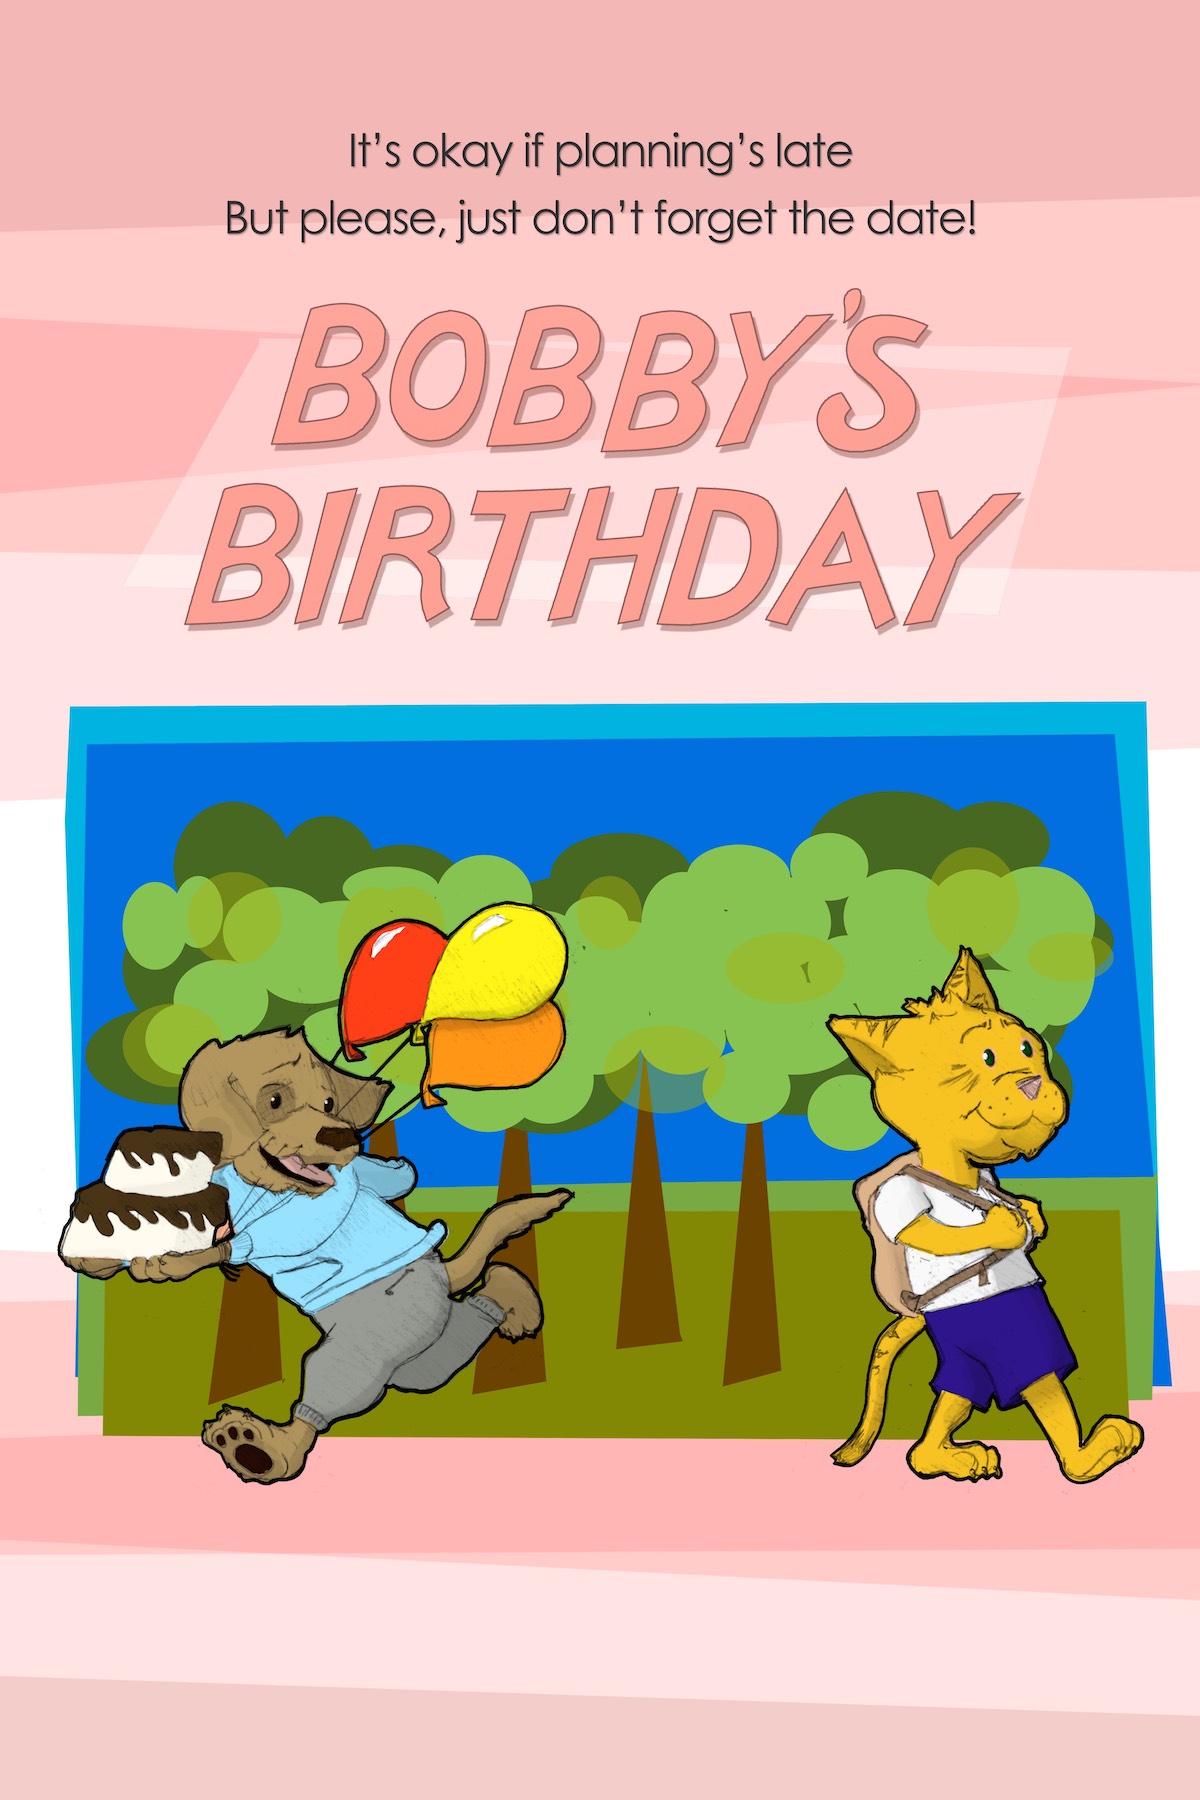 Bobby’s Birthday